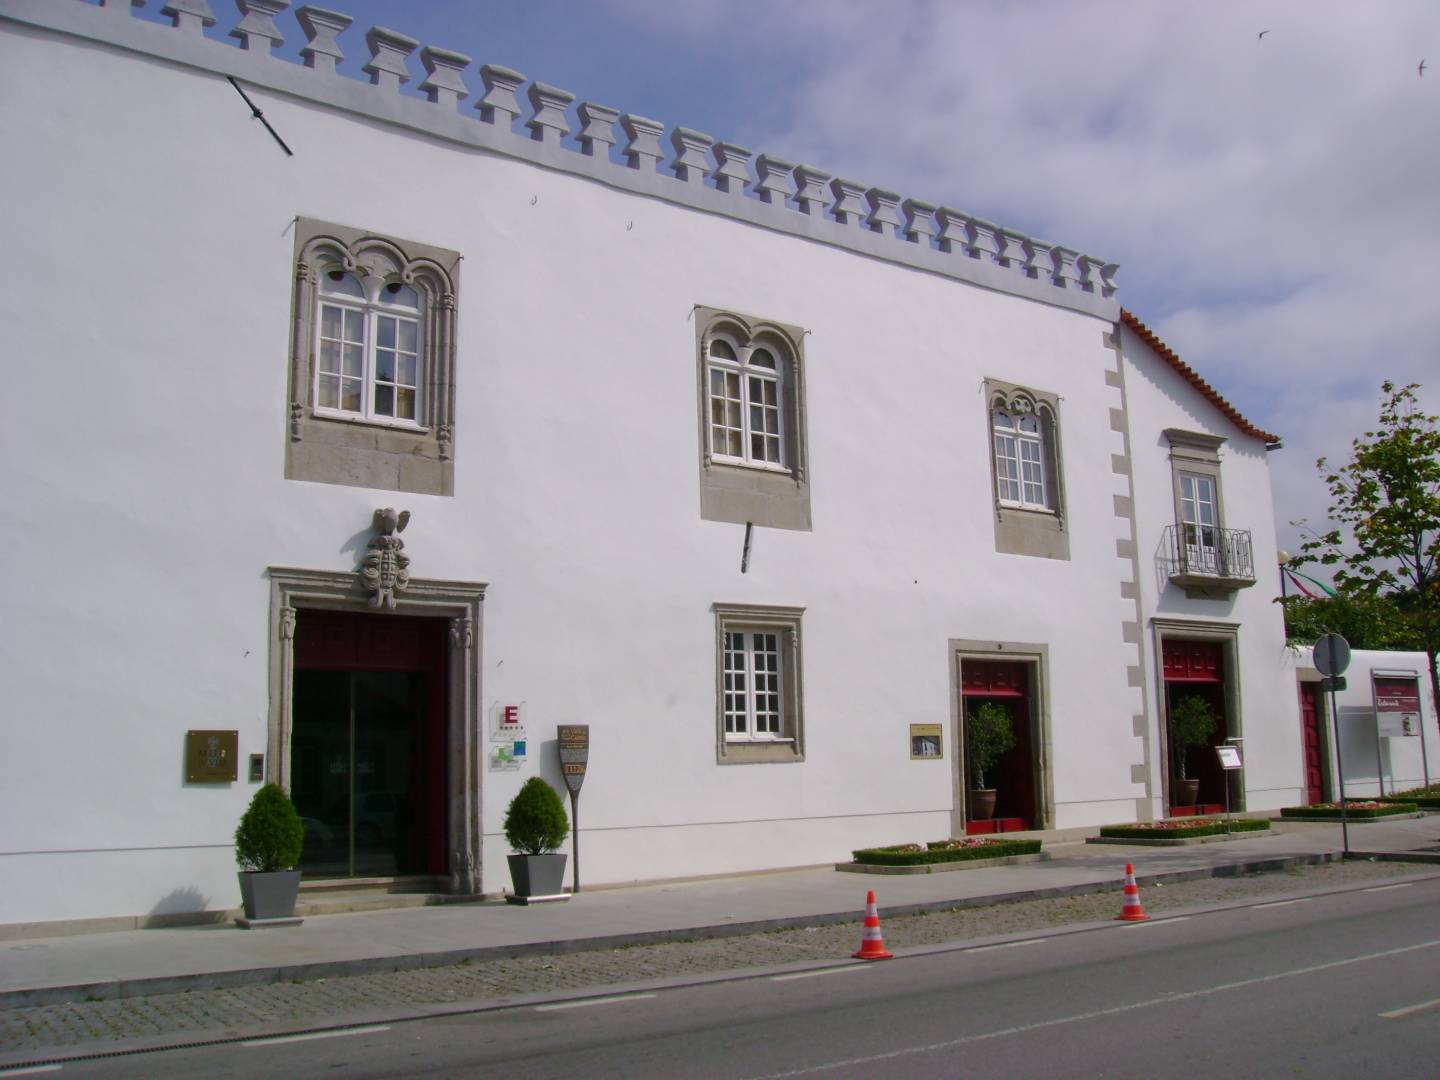 Hotel Casa Melo Alvim Viana Do Castelo All About Portugal